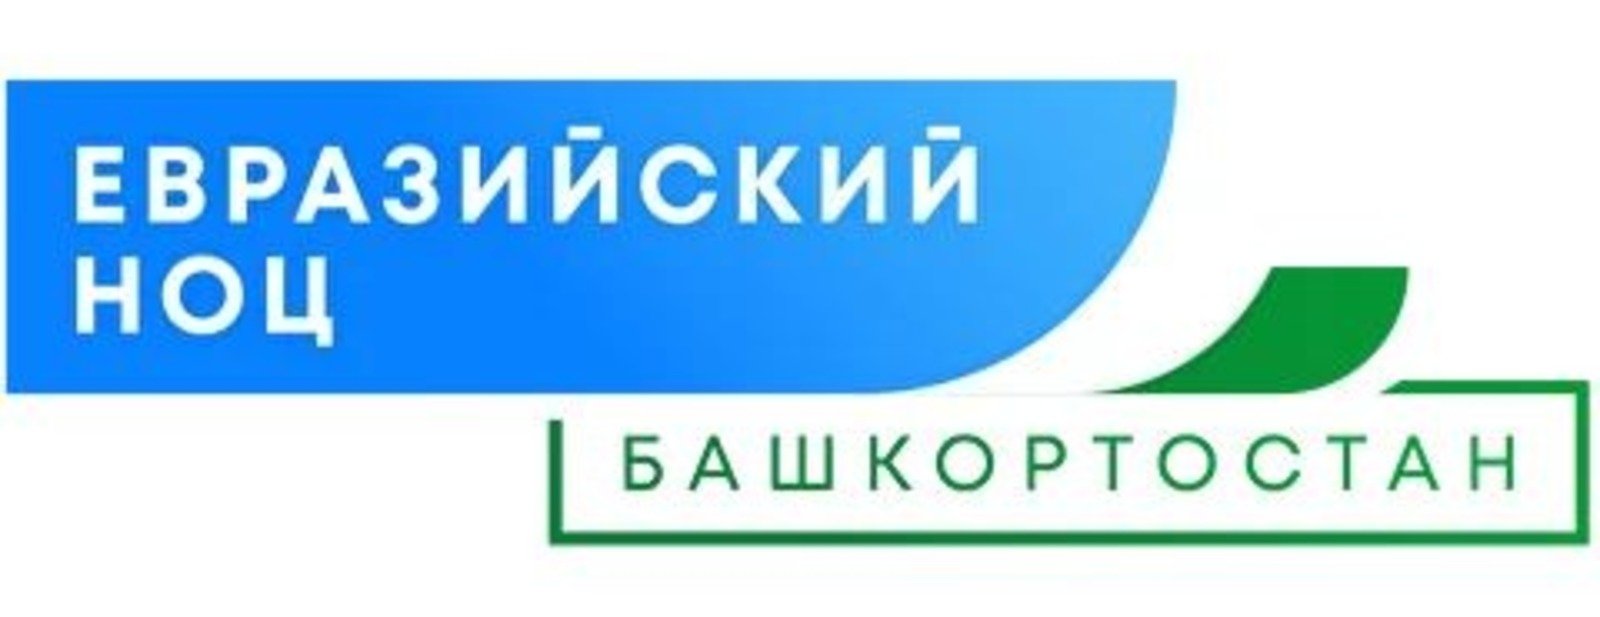 Академик Валентин Павлов: Евразийский НОЦ возрождает науку в Башкирии